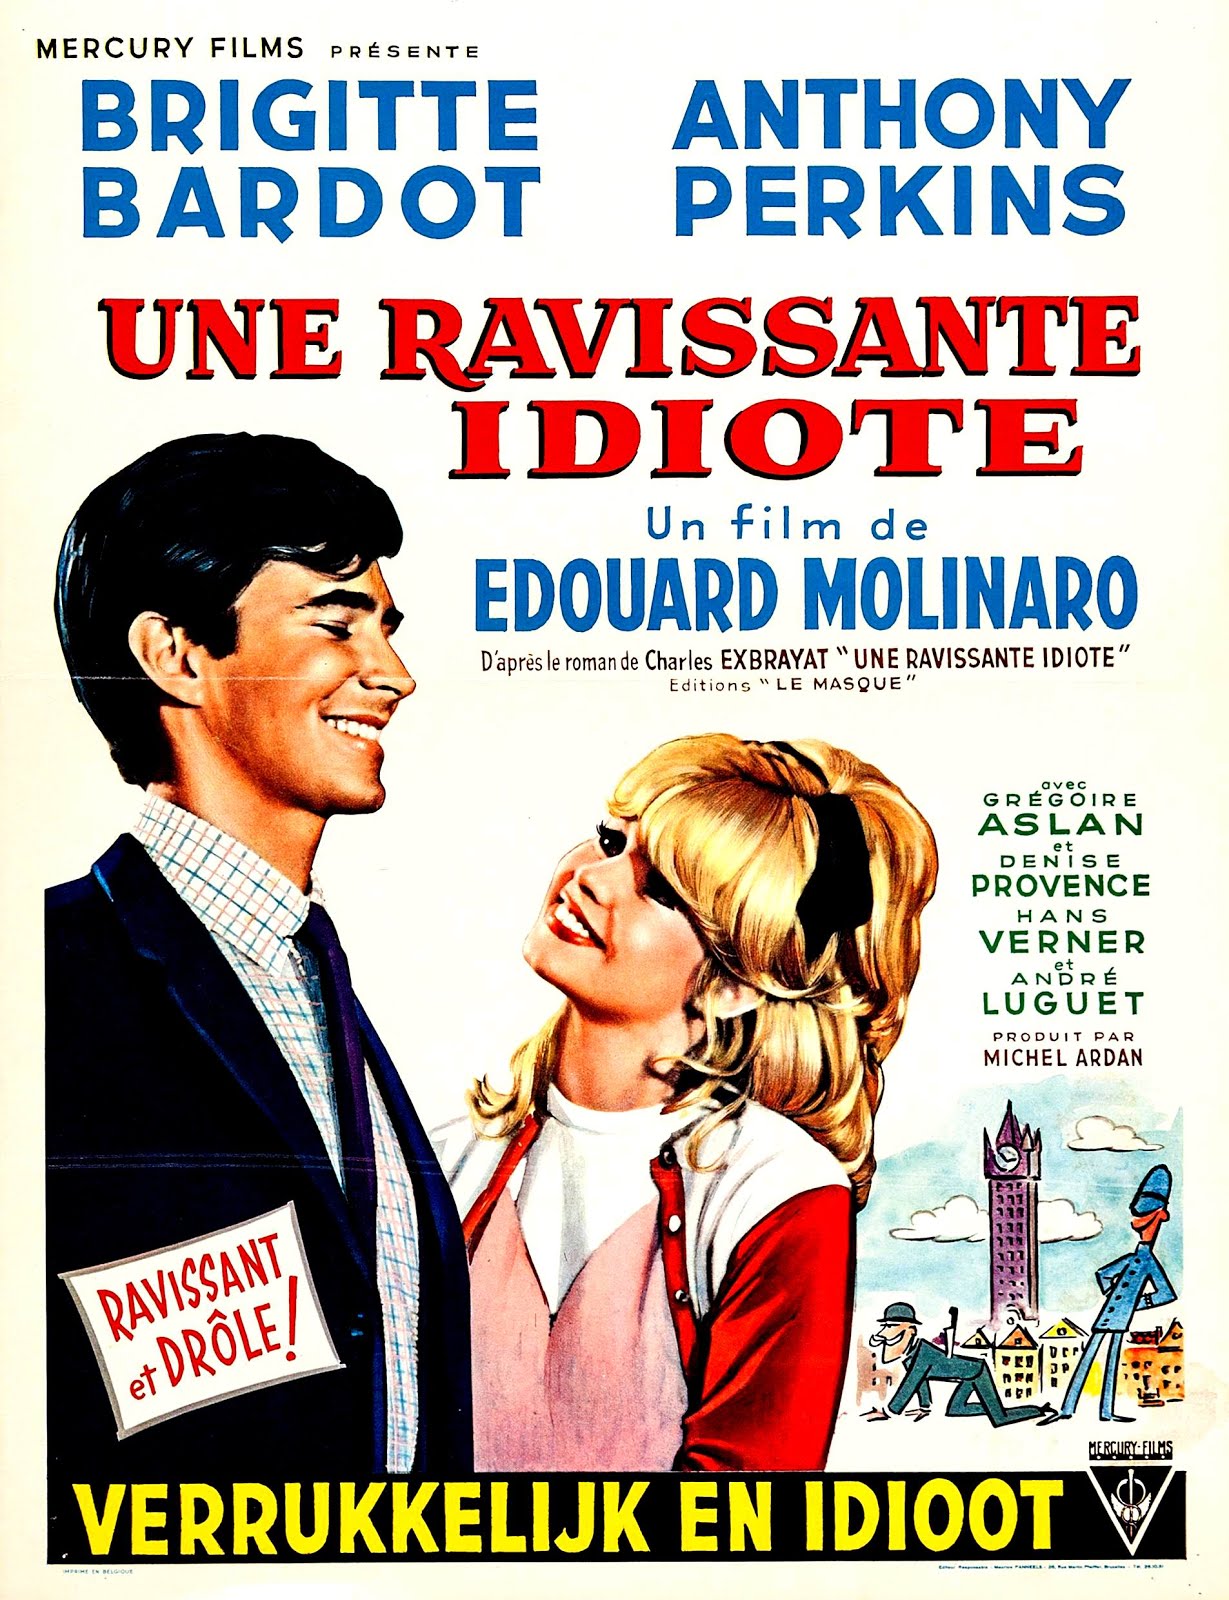 Une ravissante idiote (1963) Edouard Molinaro - Une ravissante idiote (21.10.1963 / 24.12.1963)